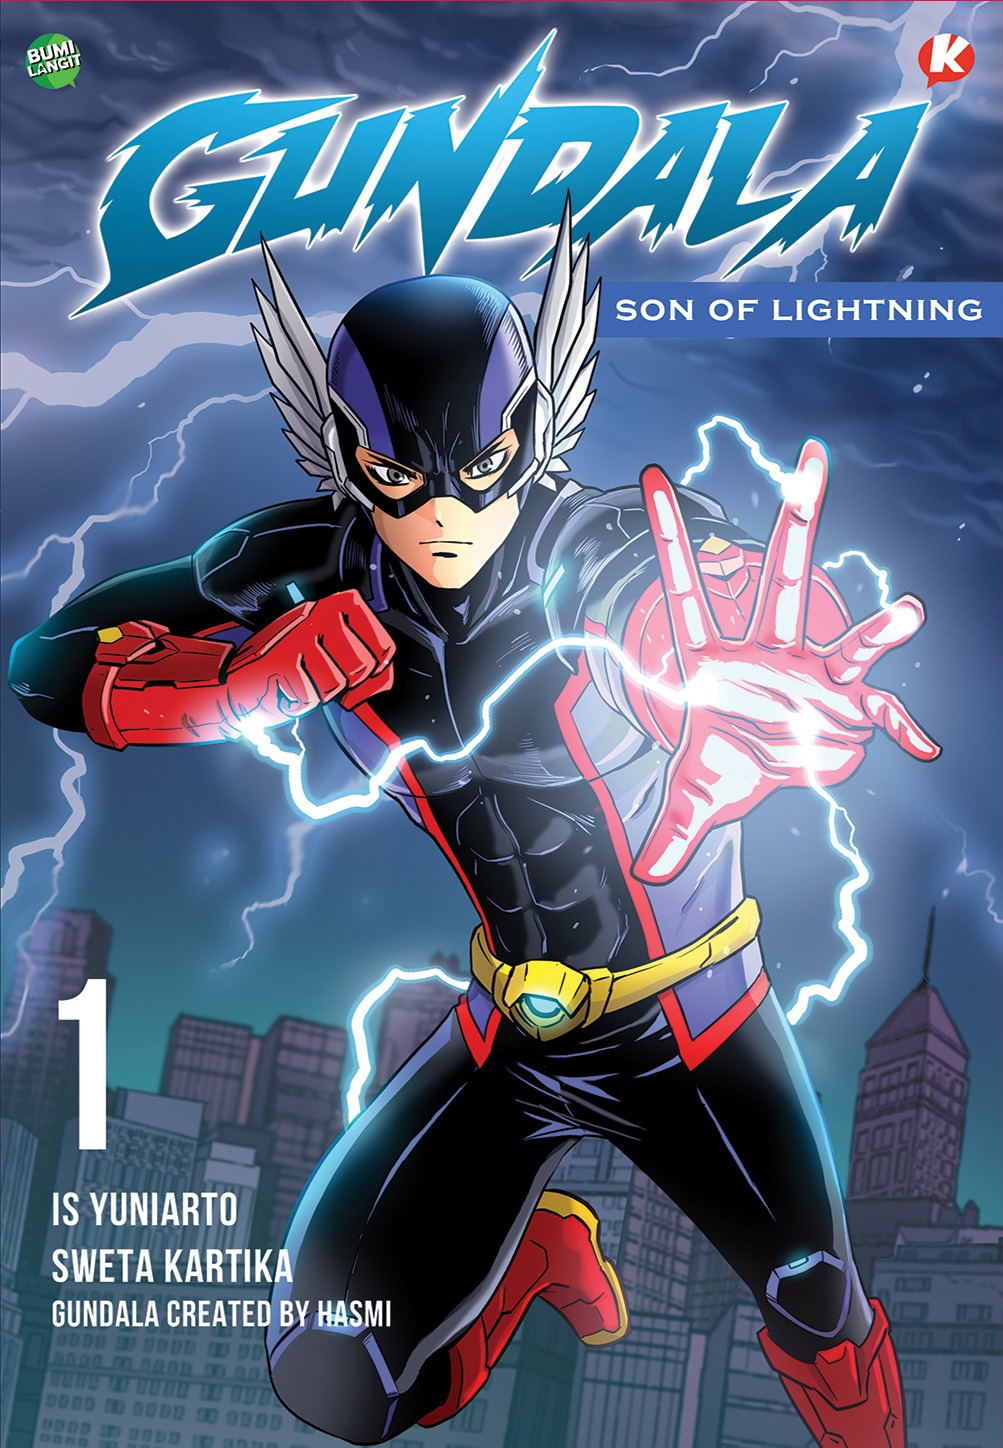 Gambar cover buku KOLONI Gundala Son of Lightning 1 dari penulis Bumilangit Comics